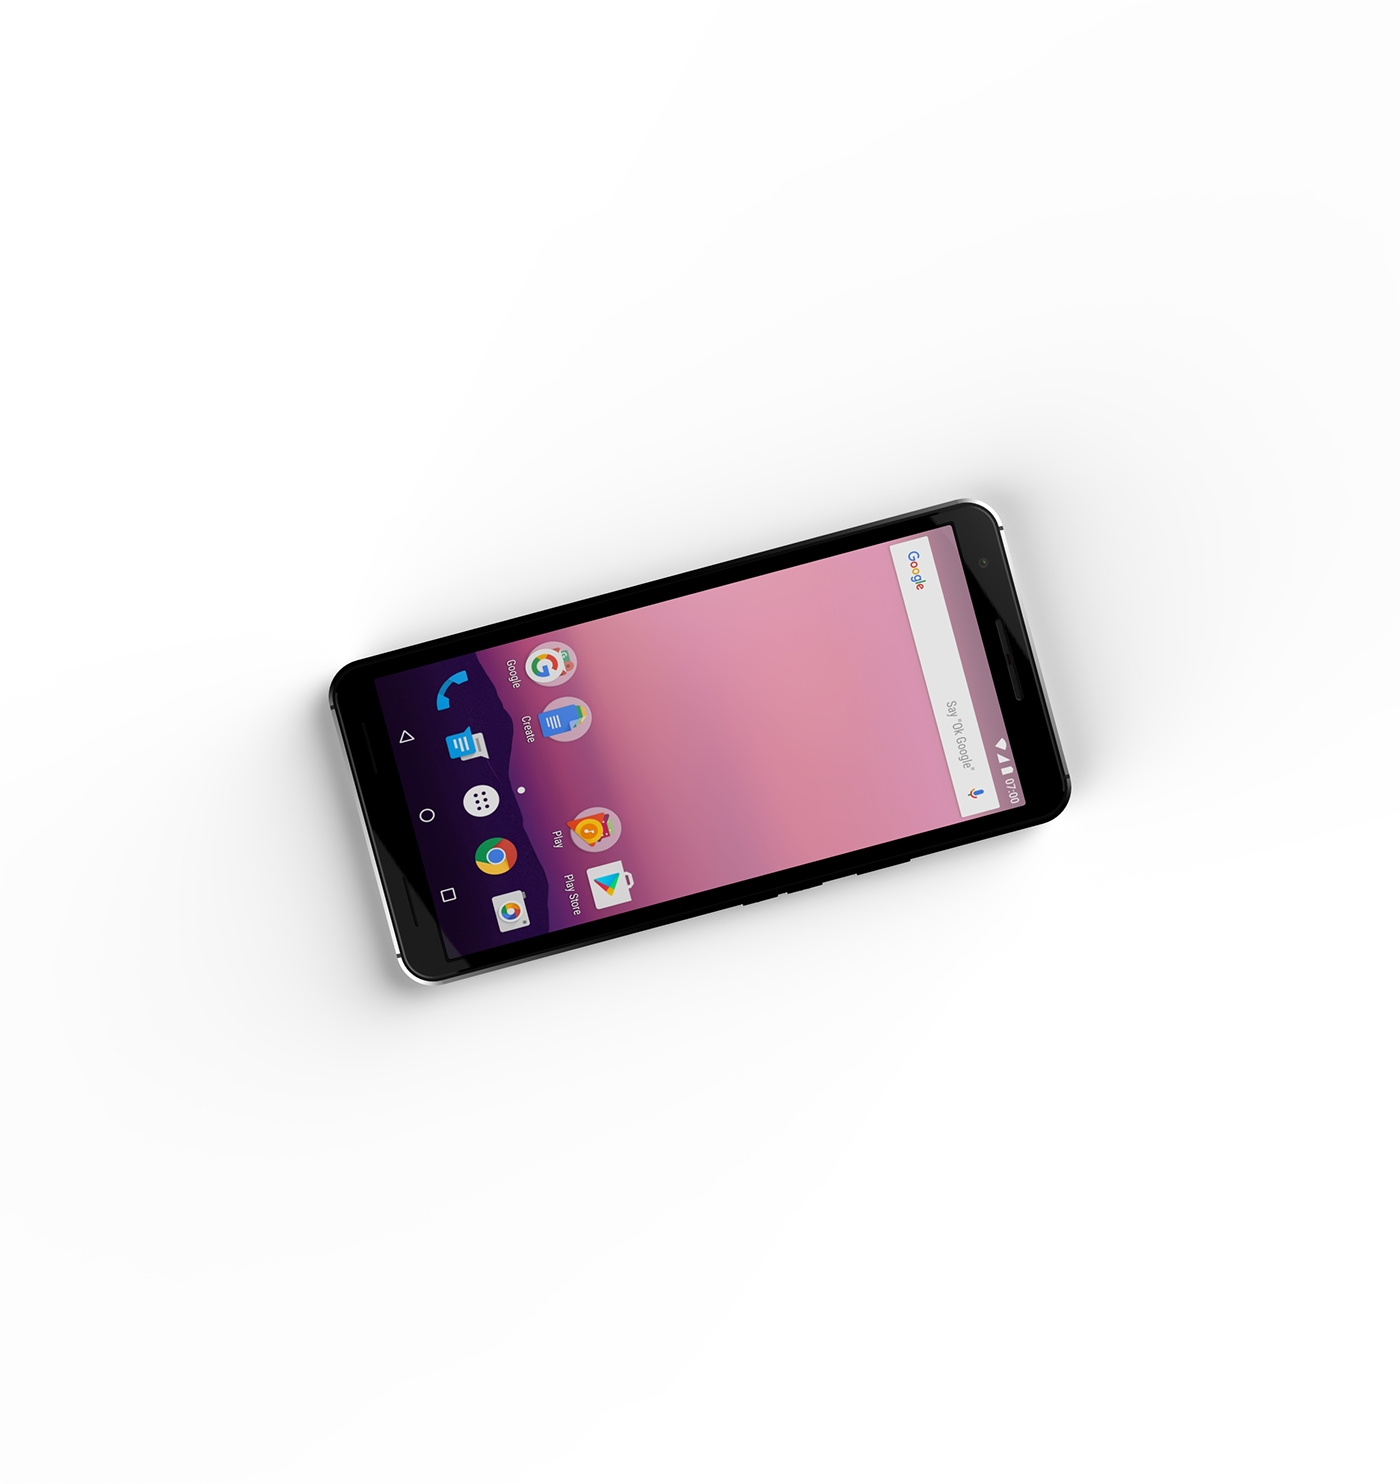 industrial Google Pixel design concept phones google